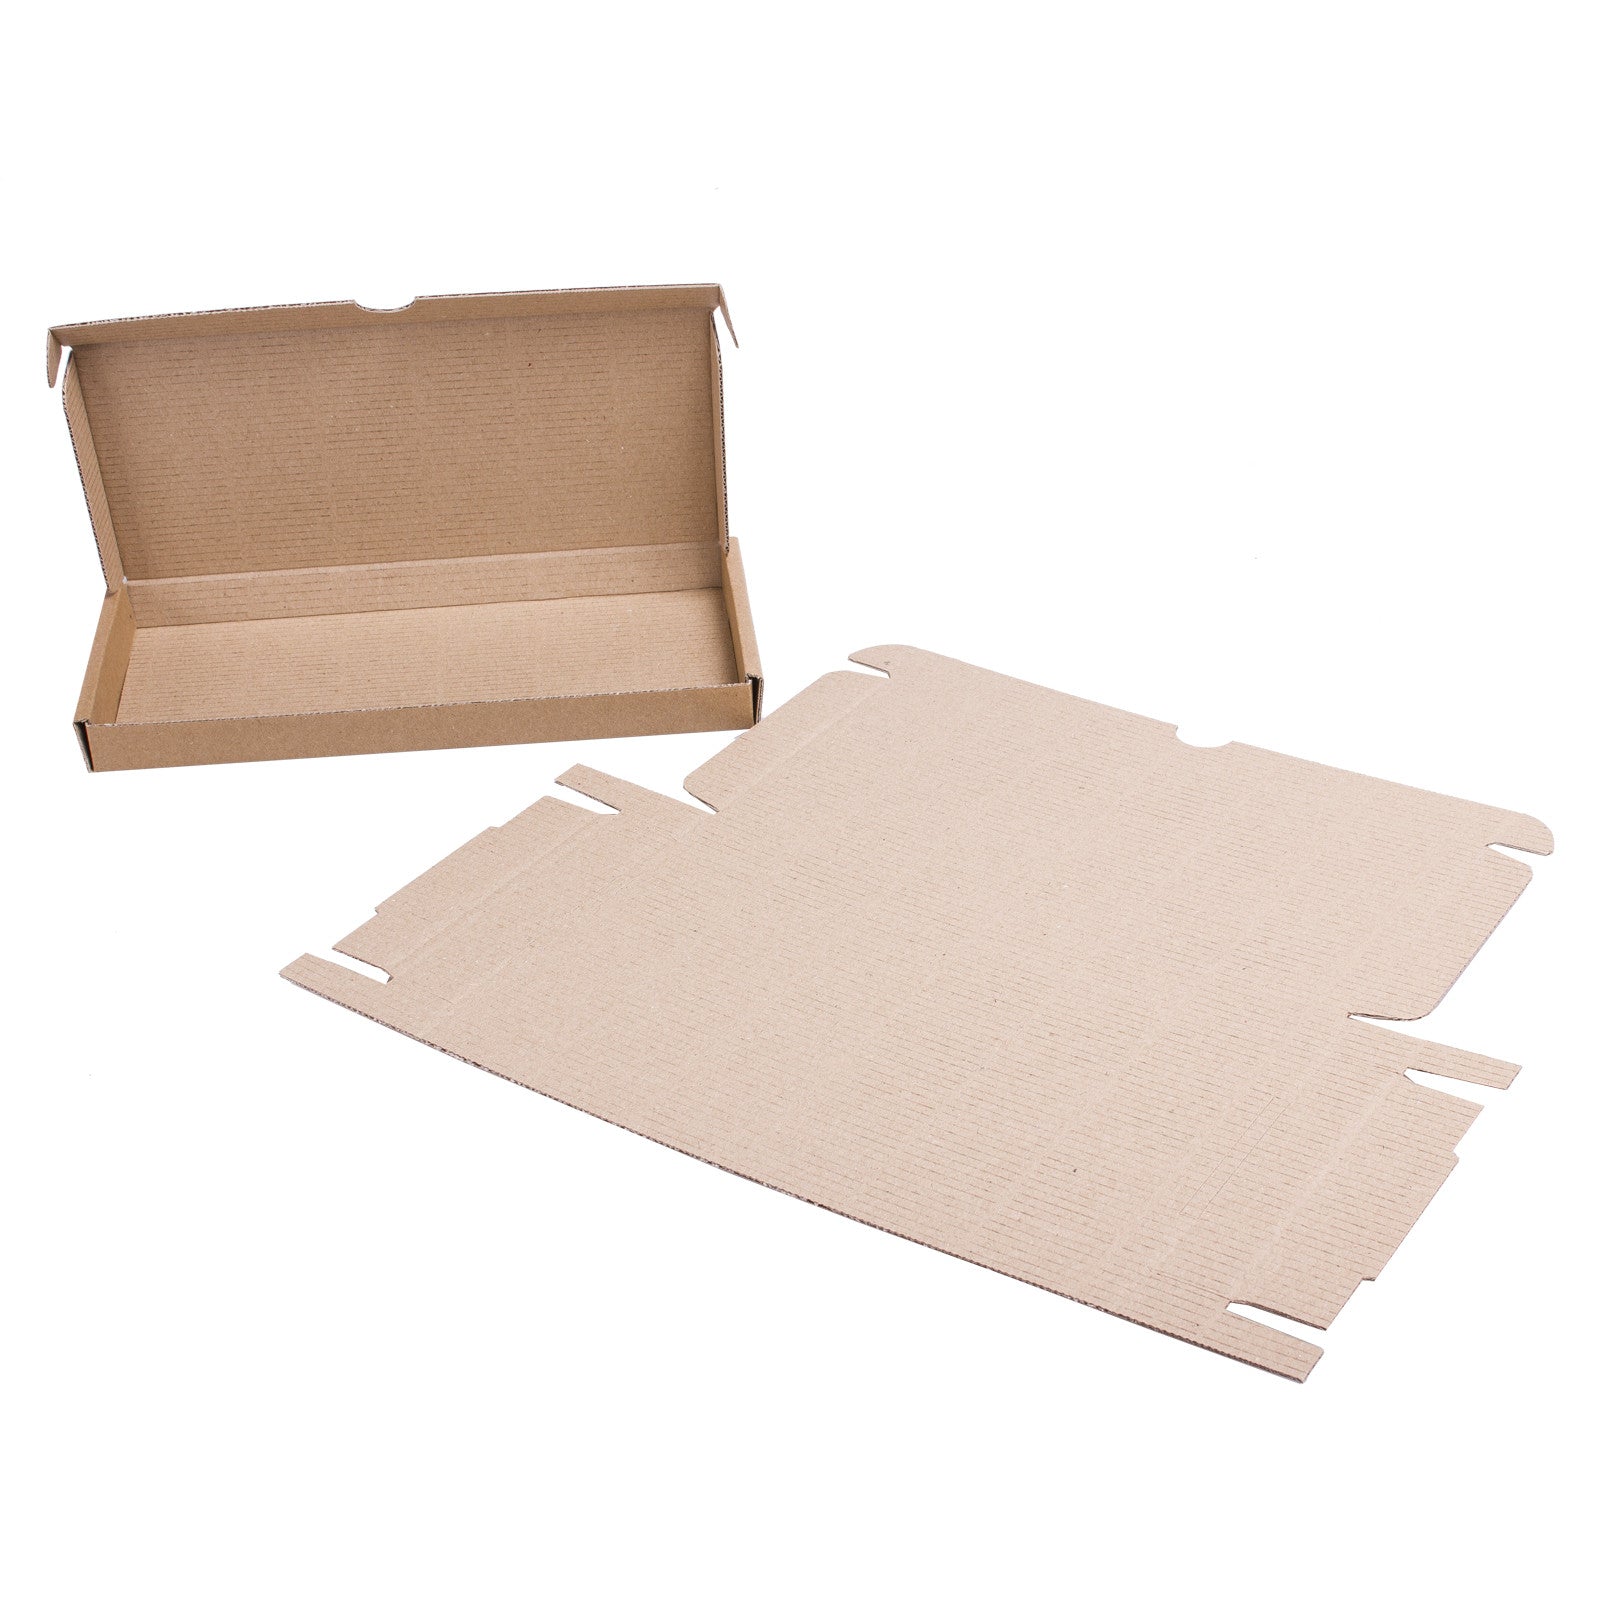 DL Royal Mail Large Letter PiP Cardboard Boxes,SR Mailing,